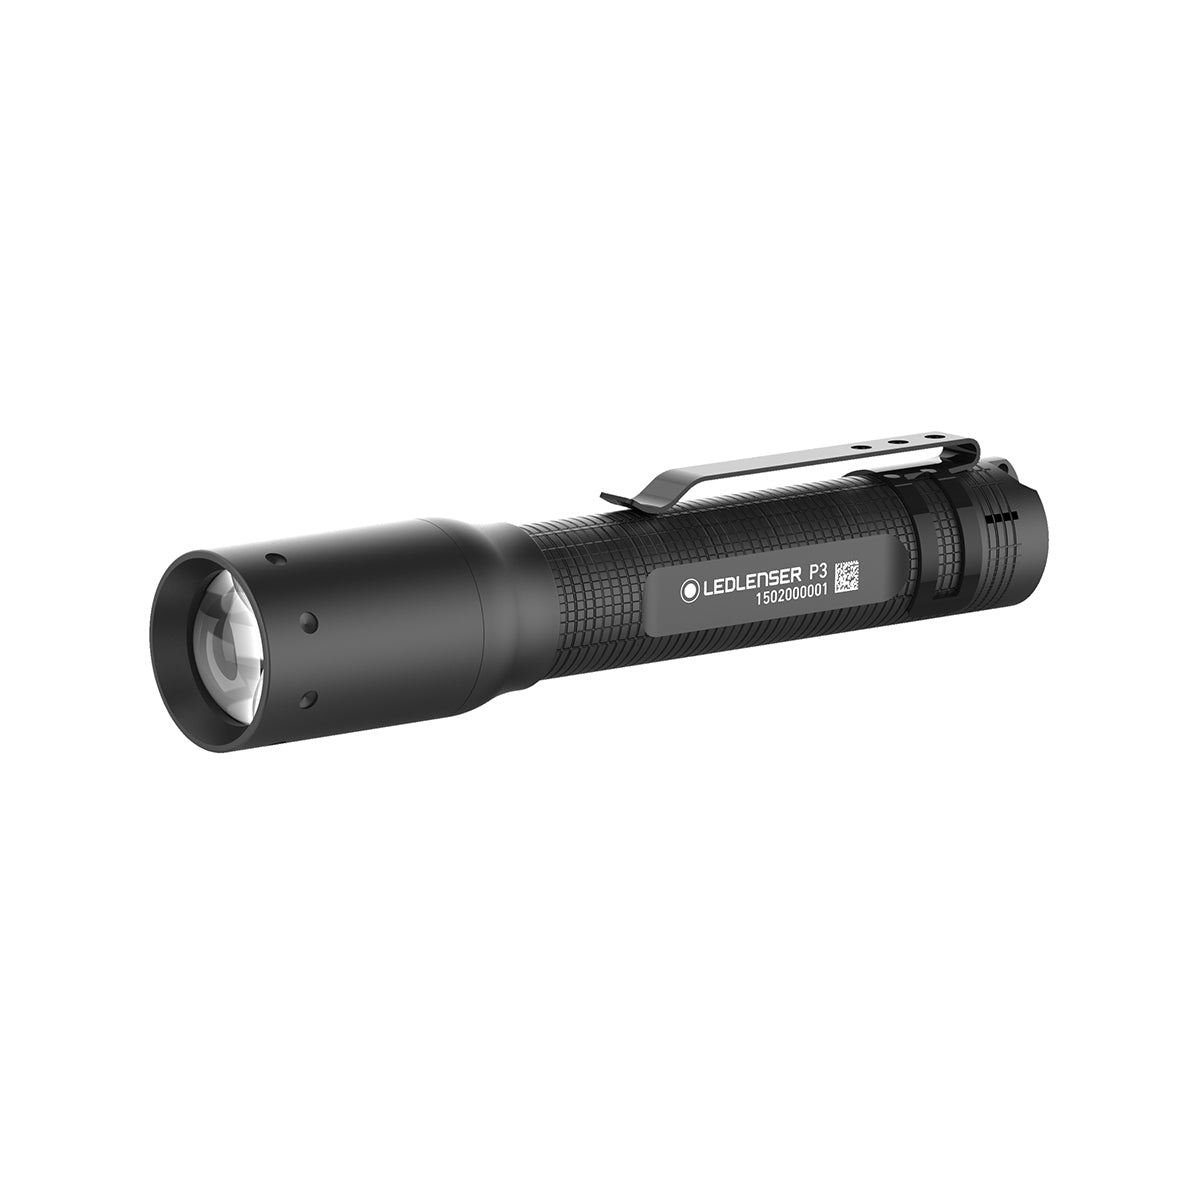 LED Lenser P3 Penlight